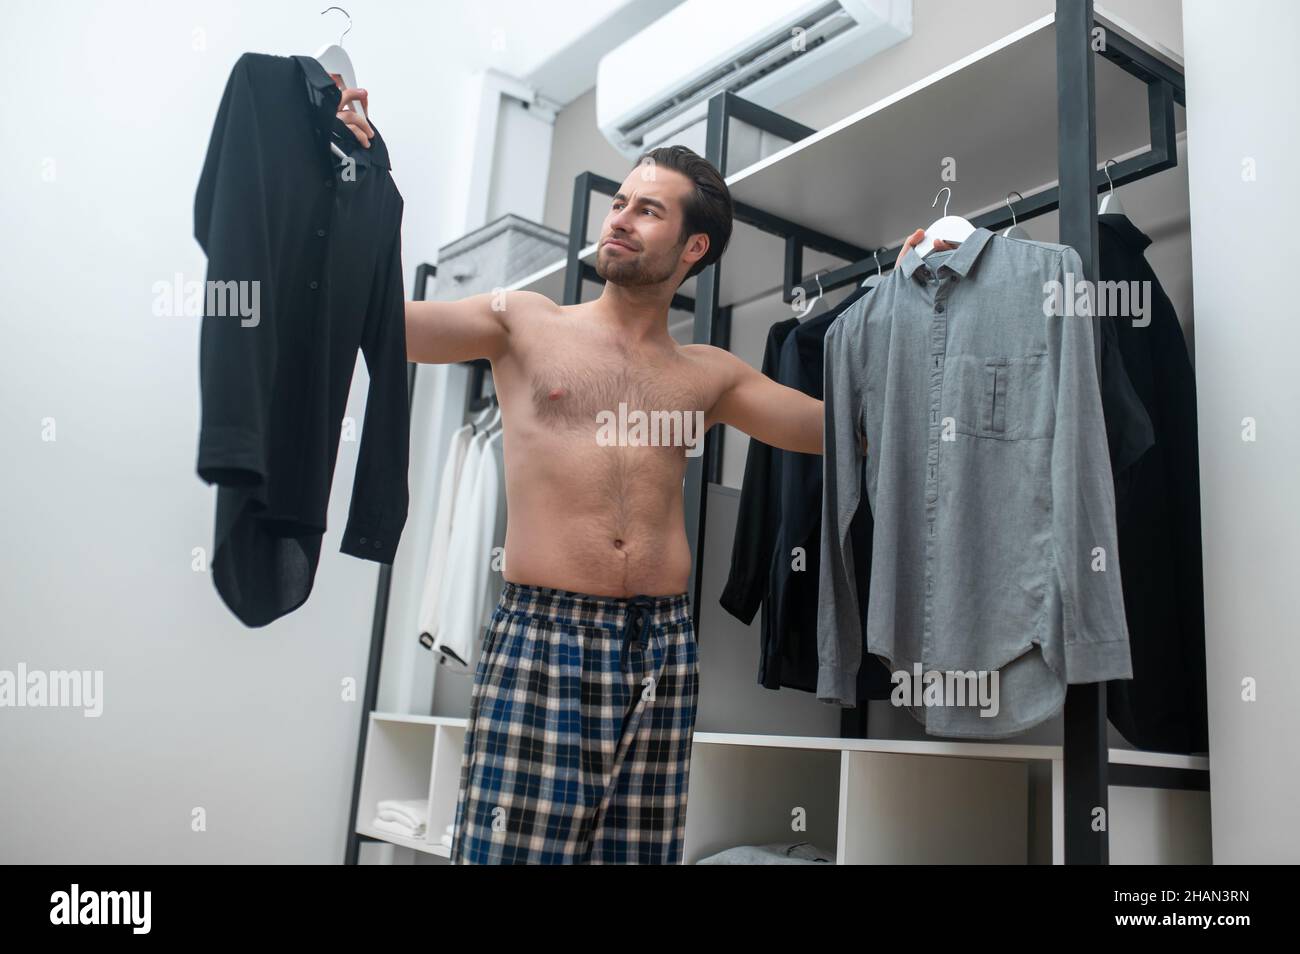 Uomo in pantaloni casa plaid scegliere una camicia da indossare Foto stock  - Alamy